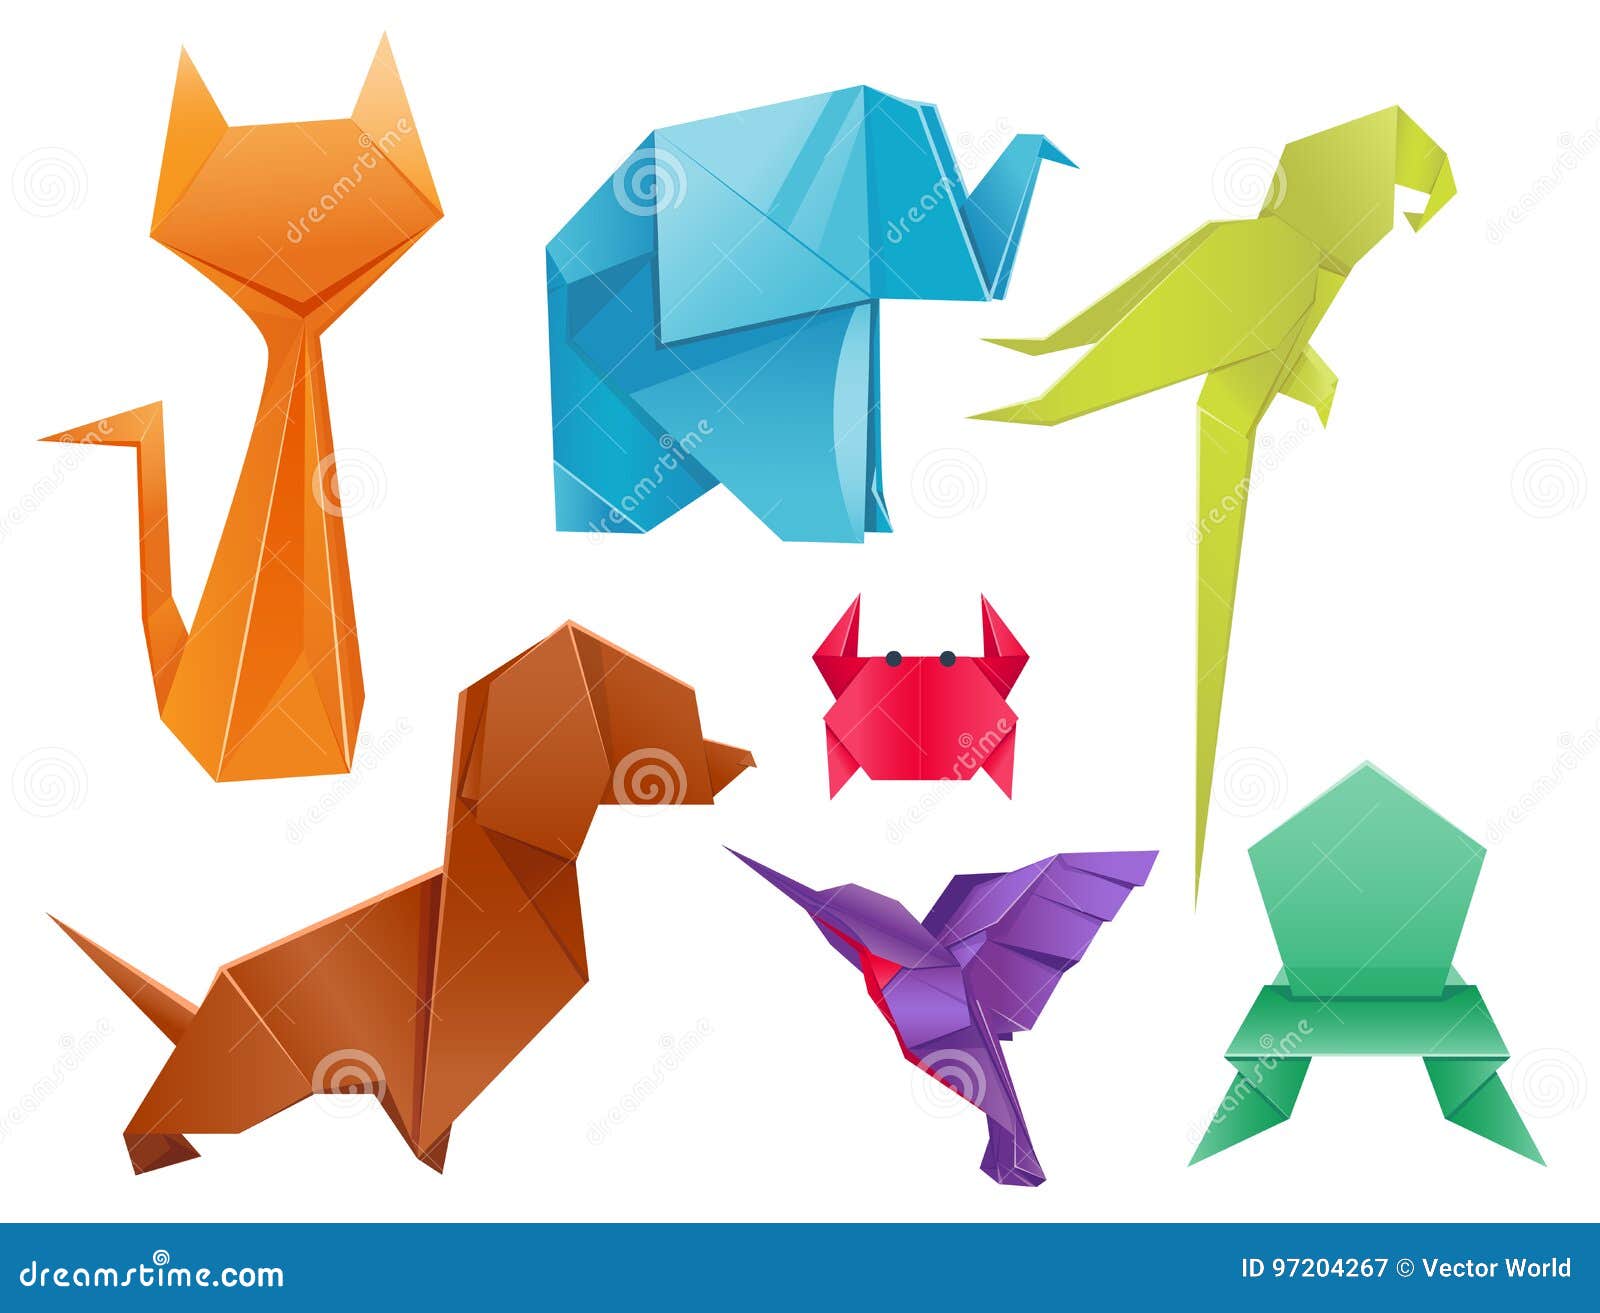 Animals Origami Set Japanese Folded Modern Wildlife Hobby Symbol Creative  Decoration Vector Illustration. Stock Vector - Illustration of geometric,  origami: 97204267